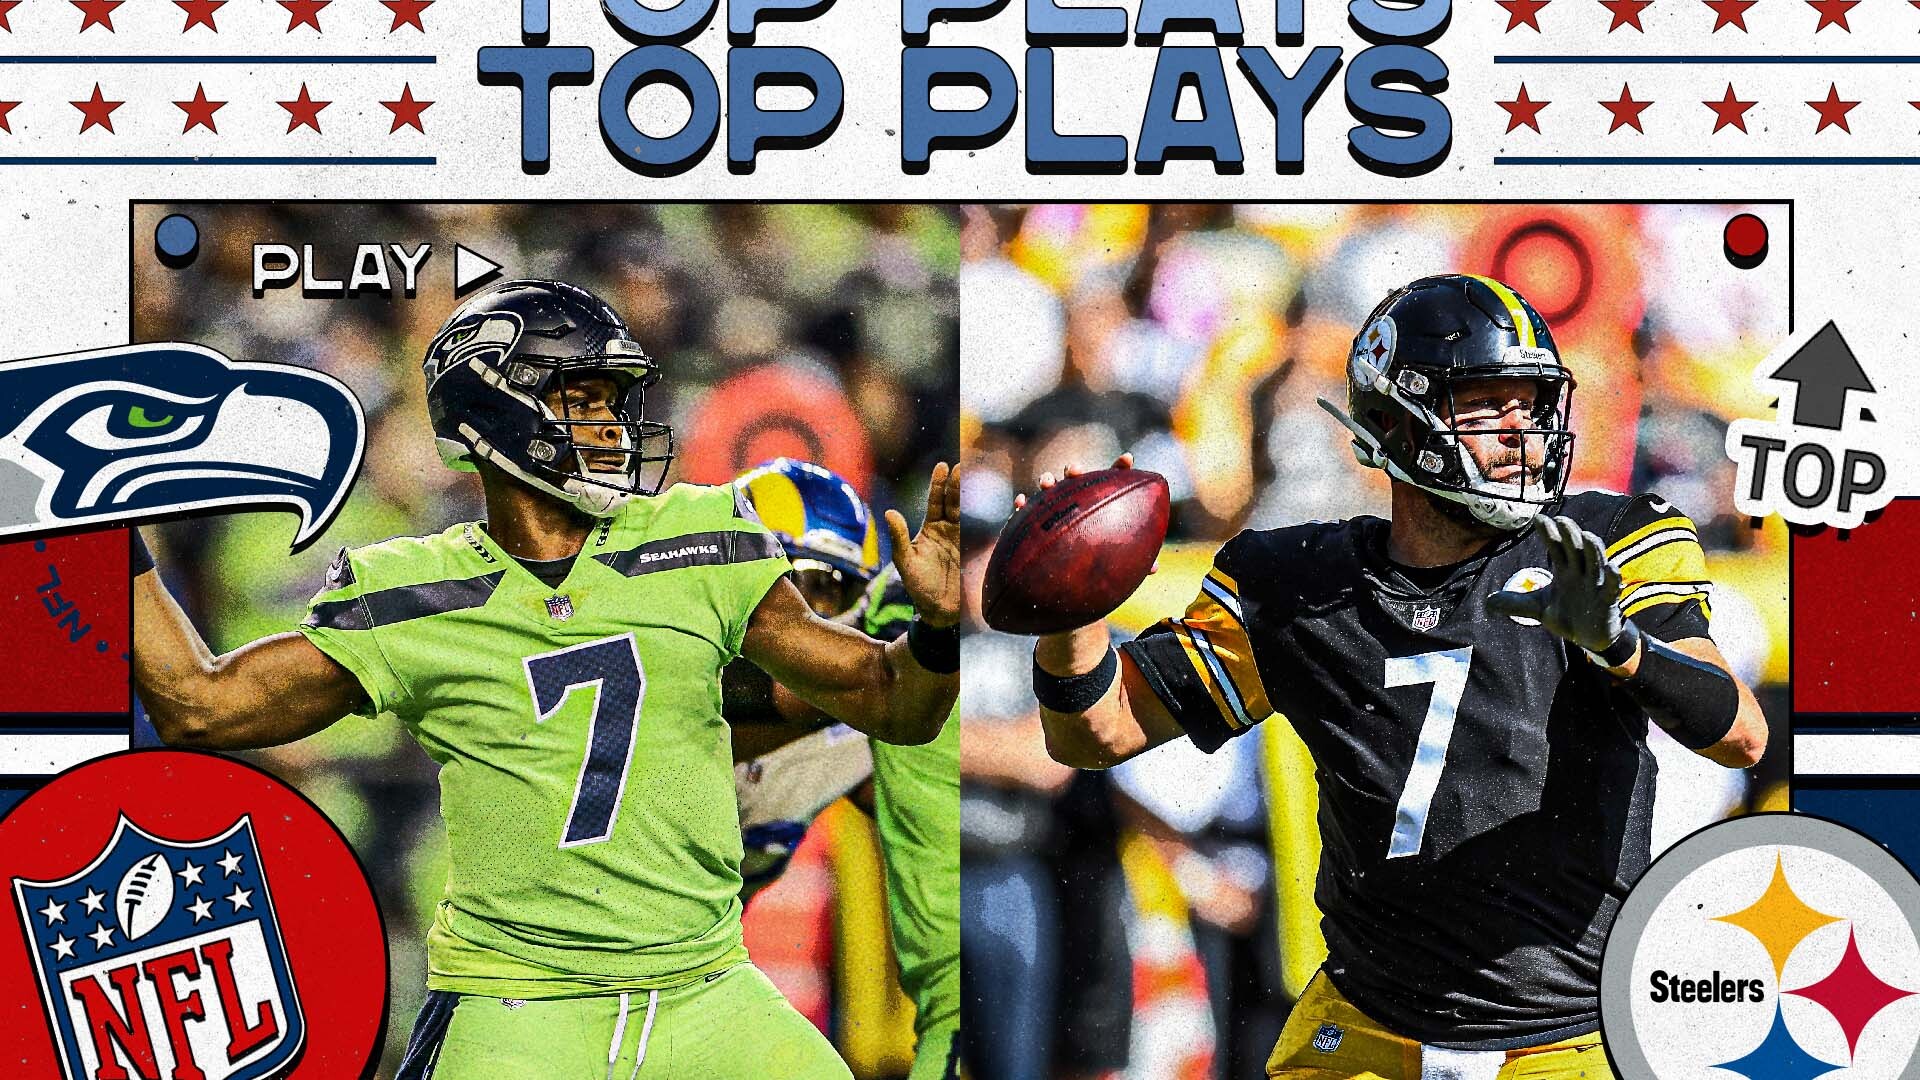 NFL Week 6 top plays: Seahawks-Steelers, Cowboys-Patriots, Cardinals-Browns, more